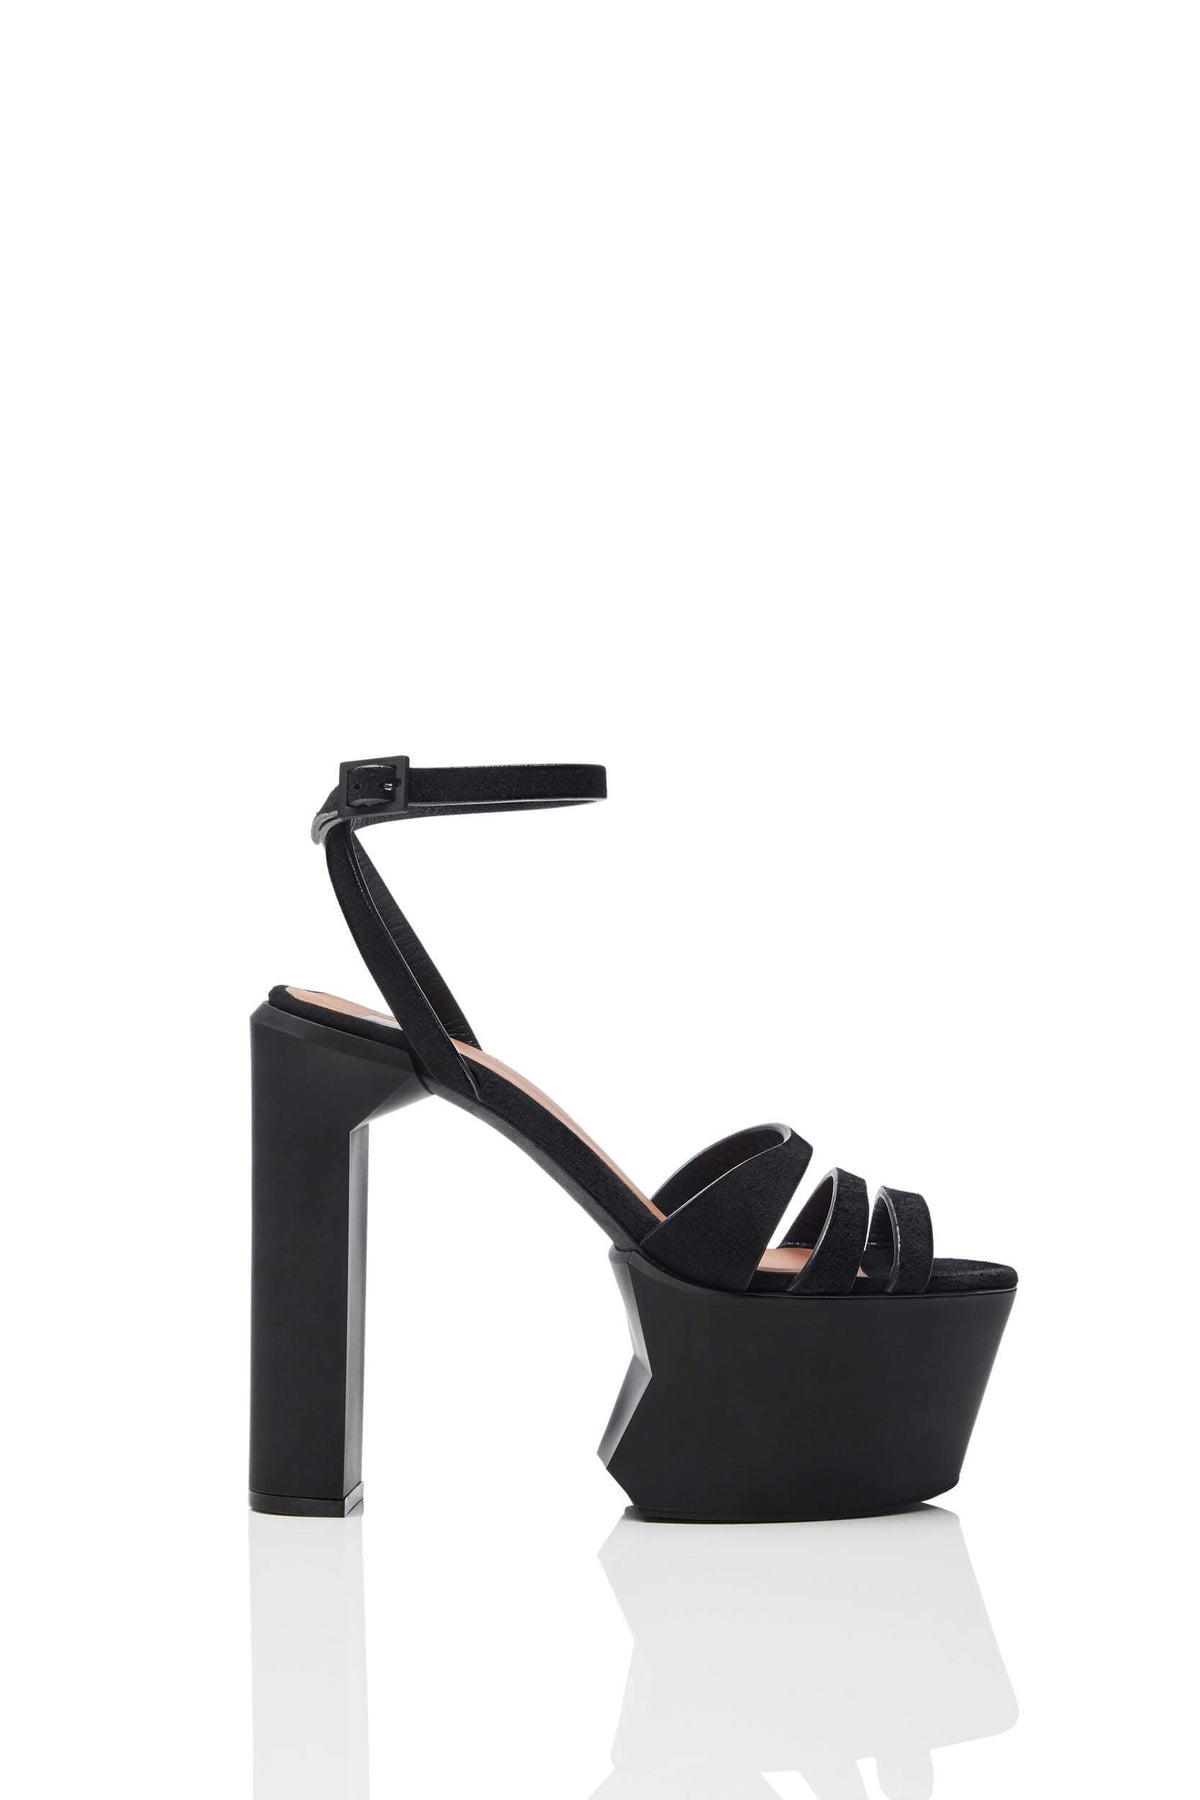 HAIKI 801 – Multi-band platform sandal with self-adjusting ankle strap. Made of Soft Kidsuede in black. 